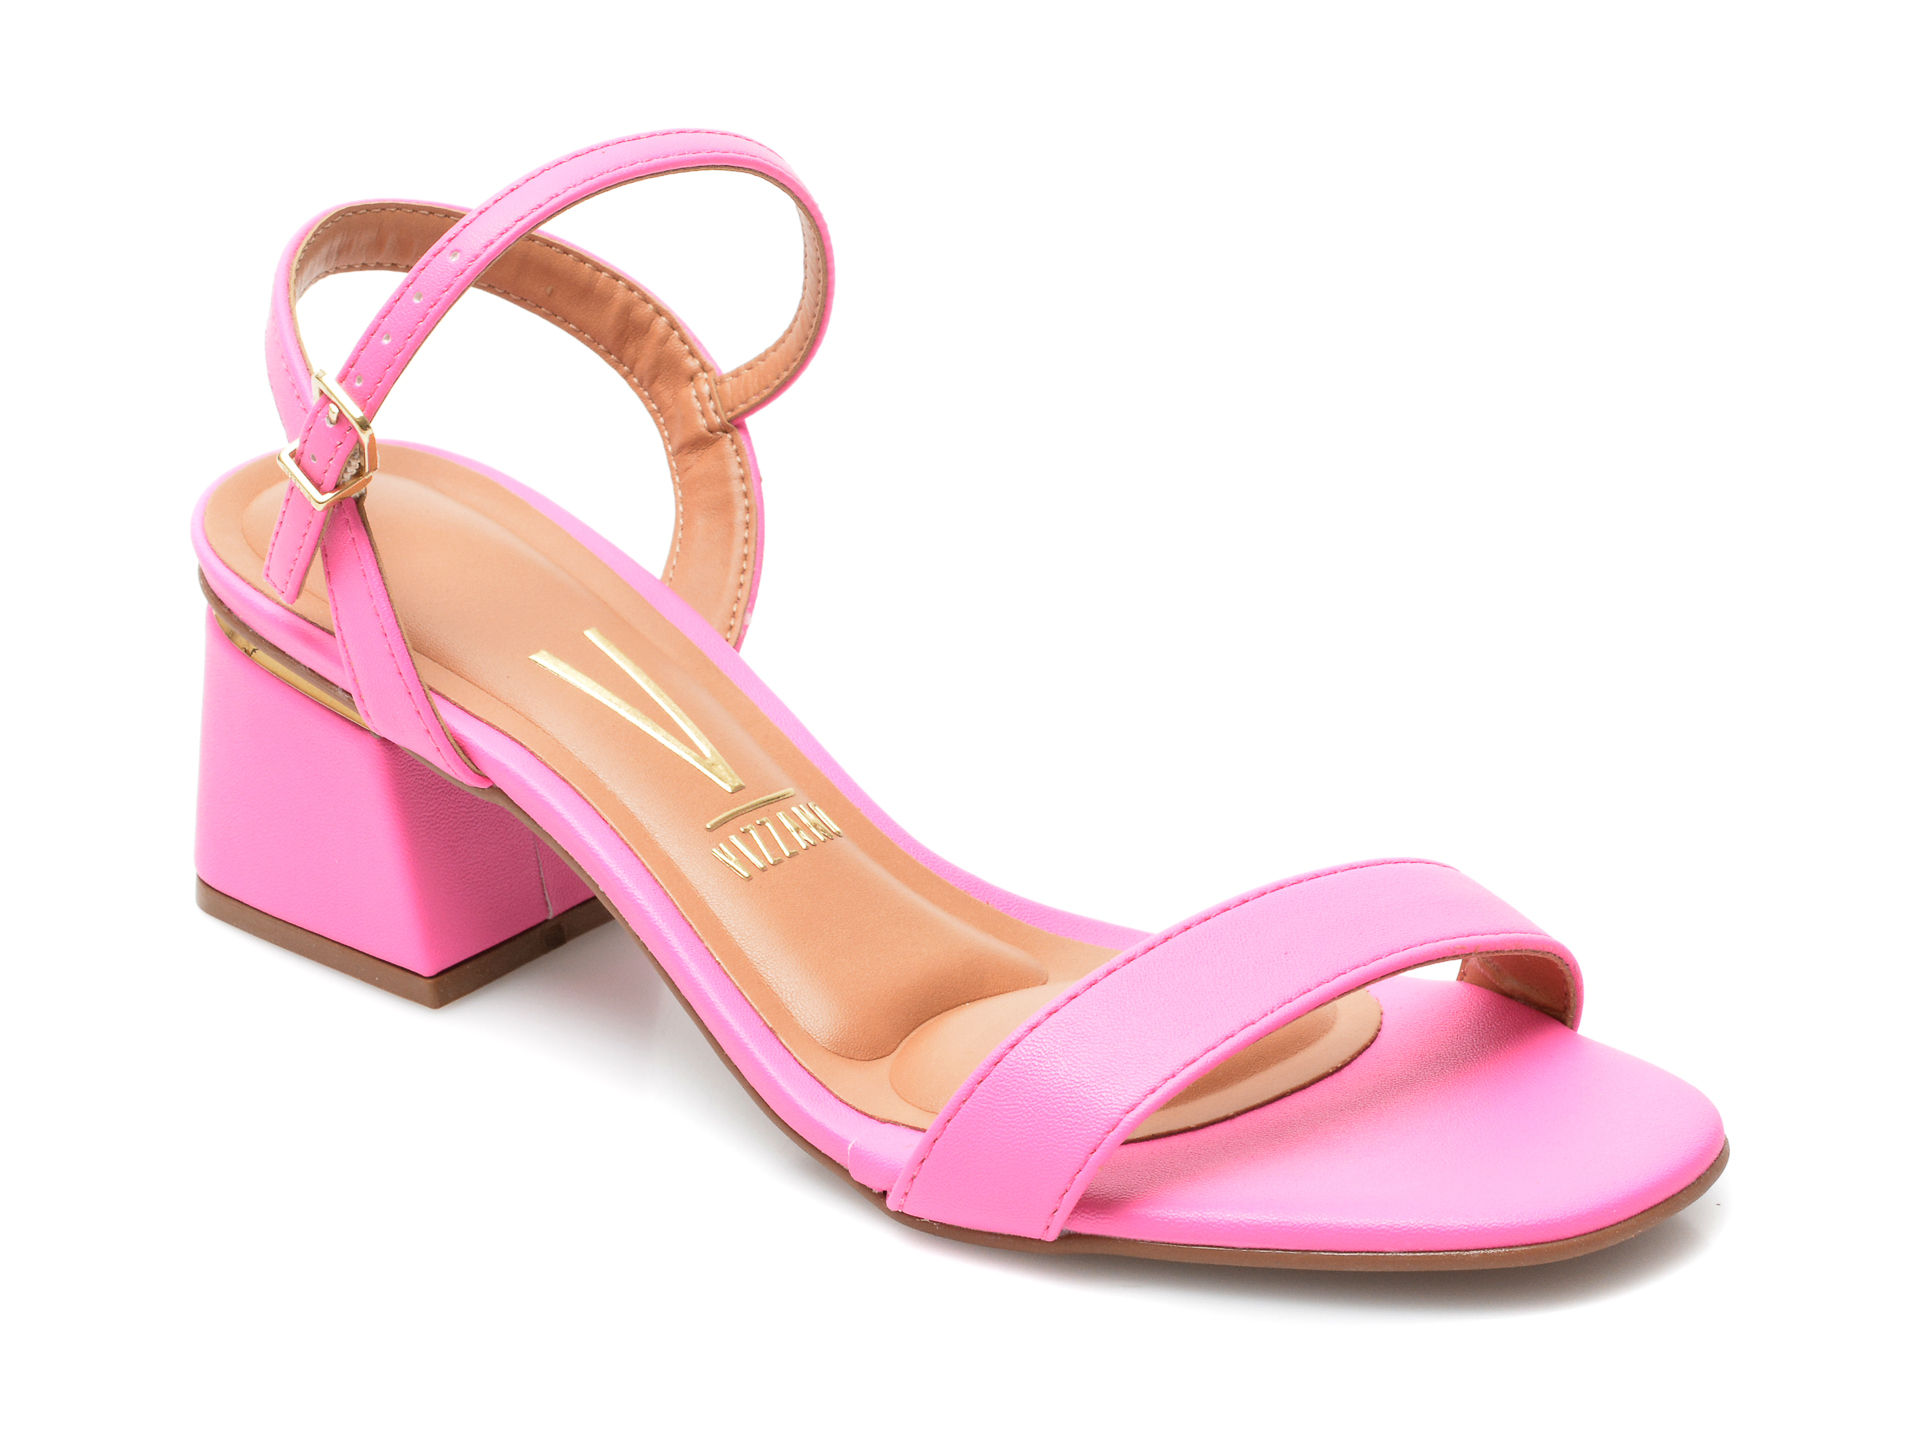 Sandale VIZZANO roz, 6428101, din piele ecologica Vizzano otter.ro